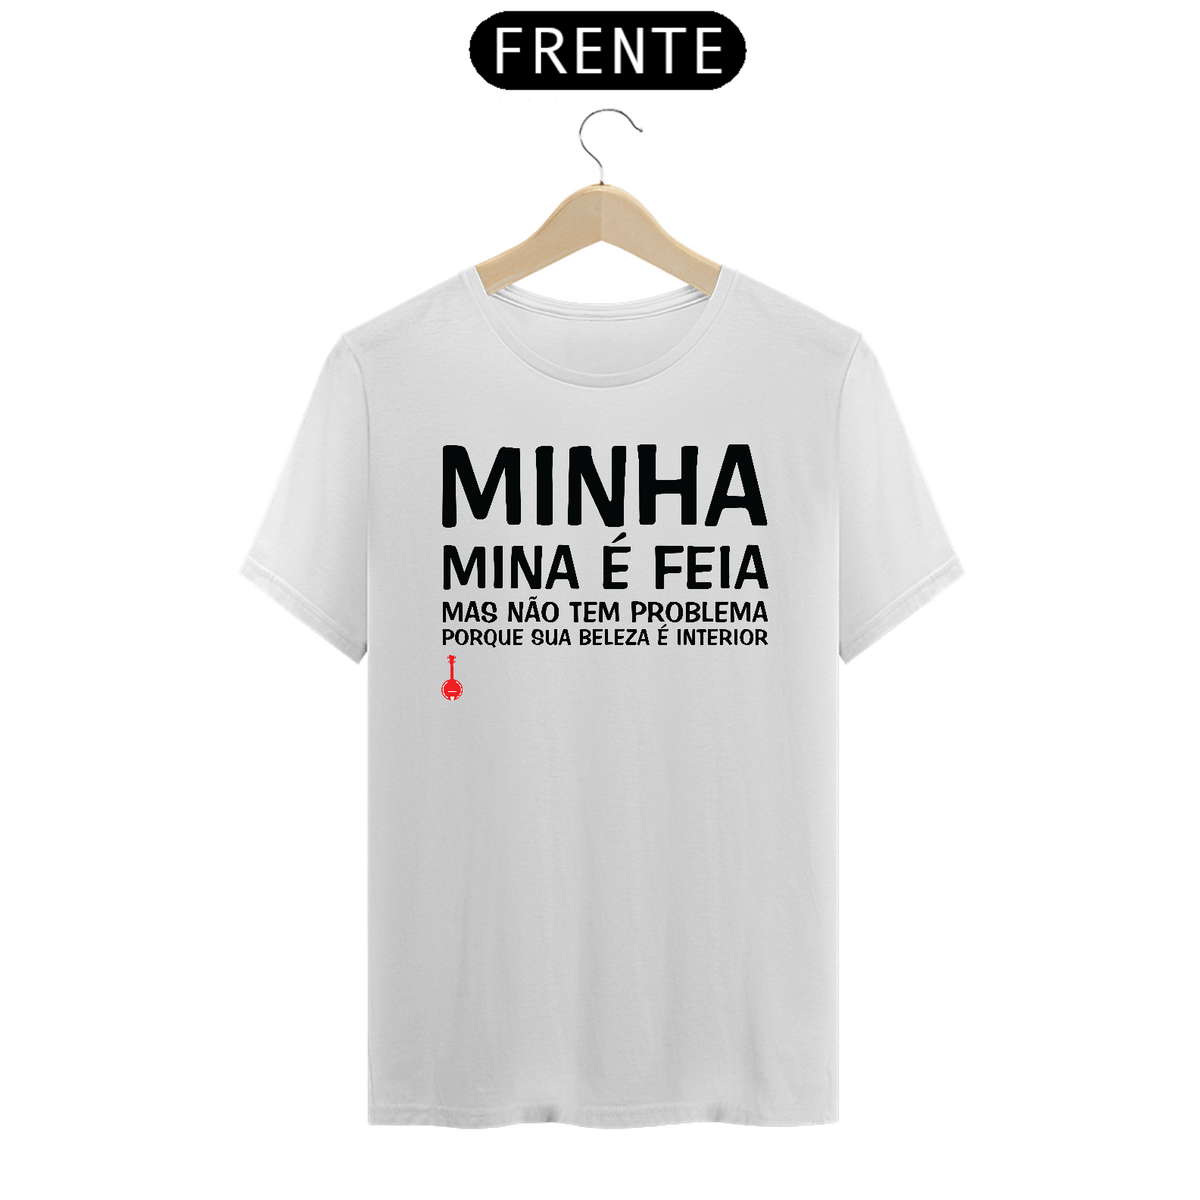 Nome do produto: Camiseta A Minha Mina é Feia - Branca